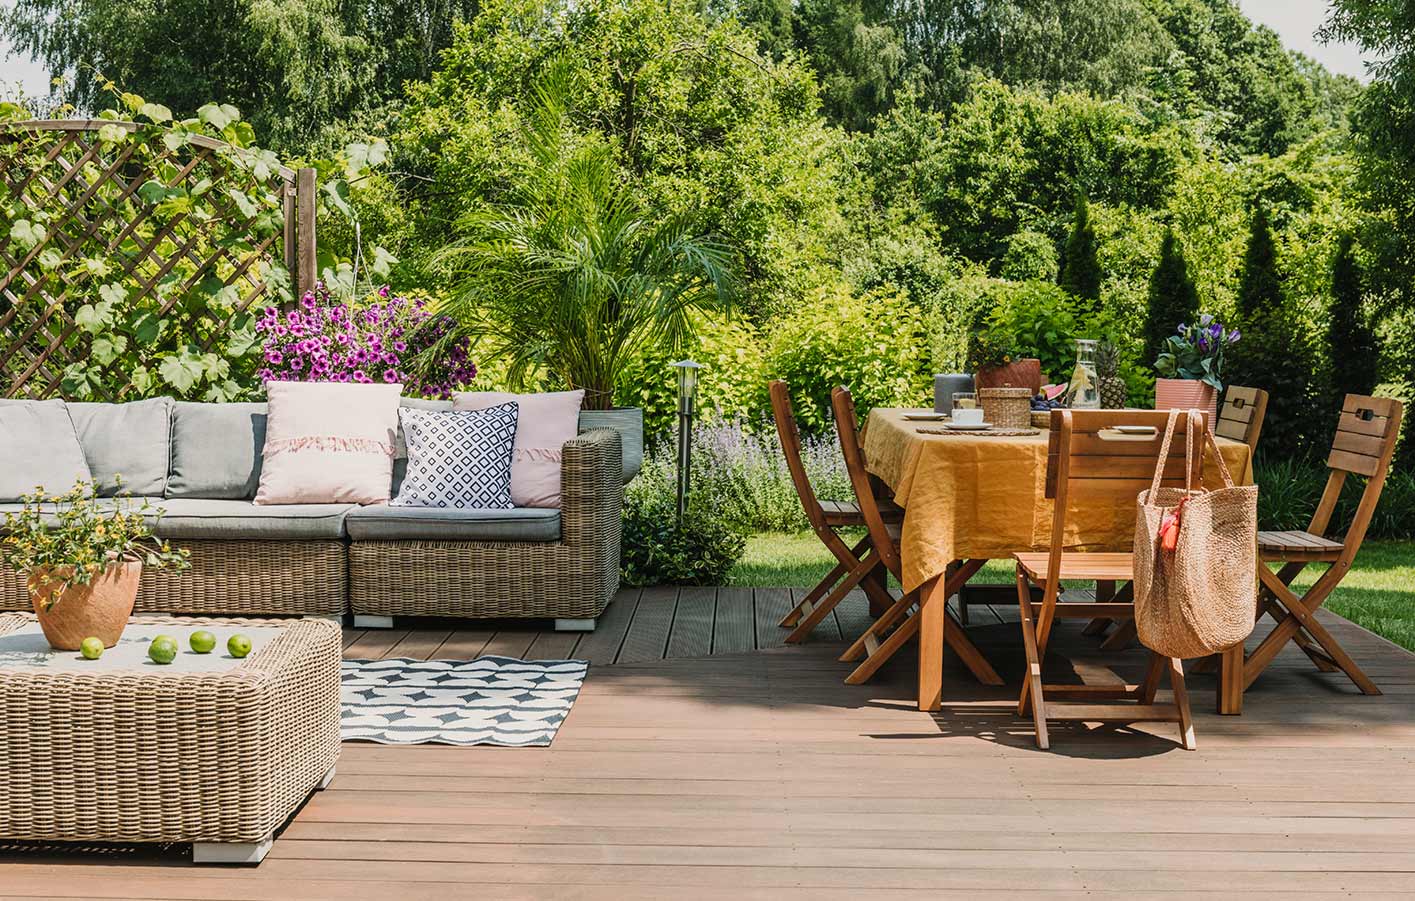 Gartenterrasse mit Möbeln in einem schönen Sommerambiente im Grünen